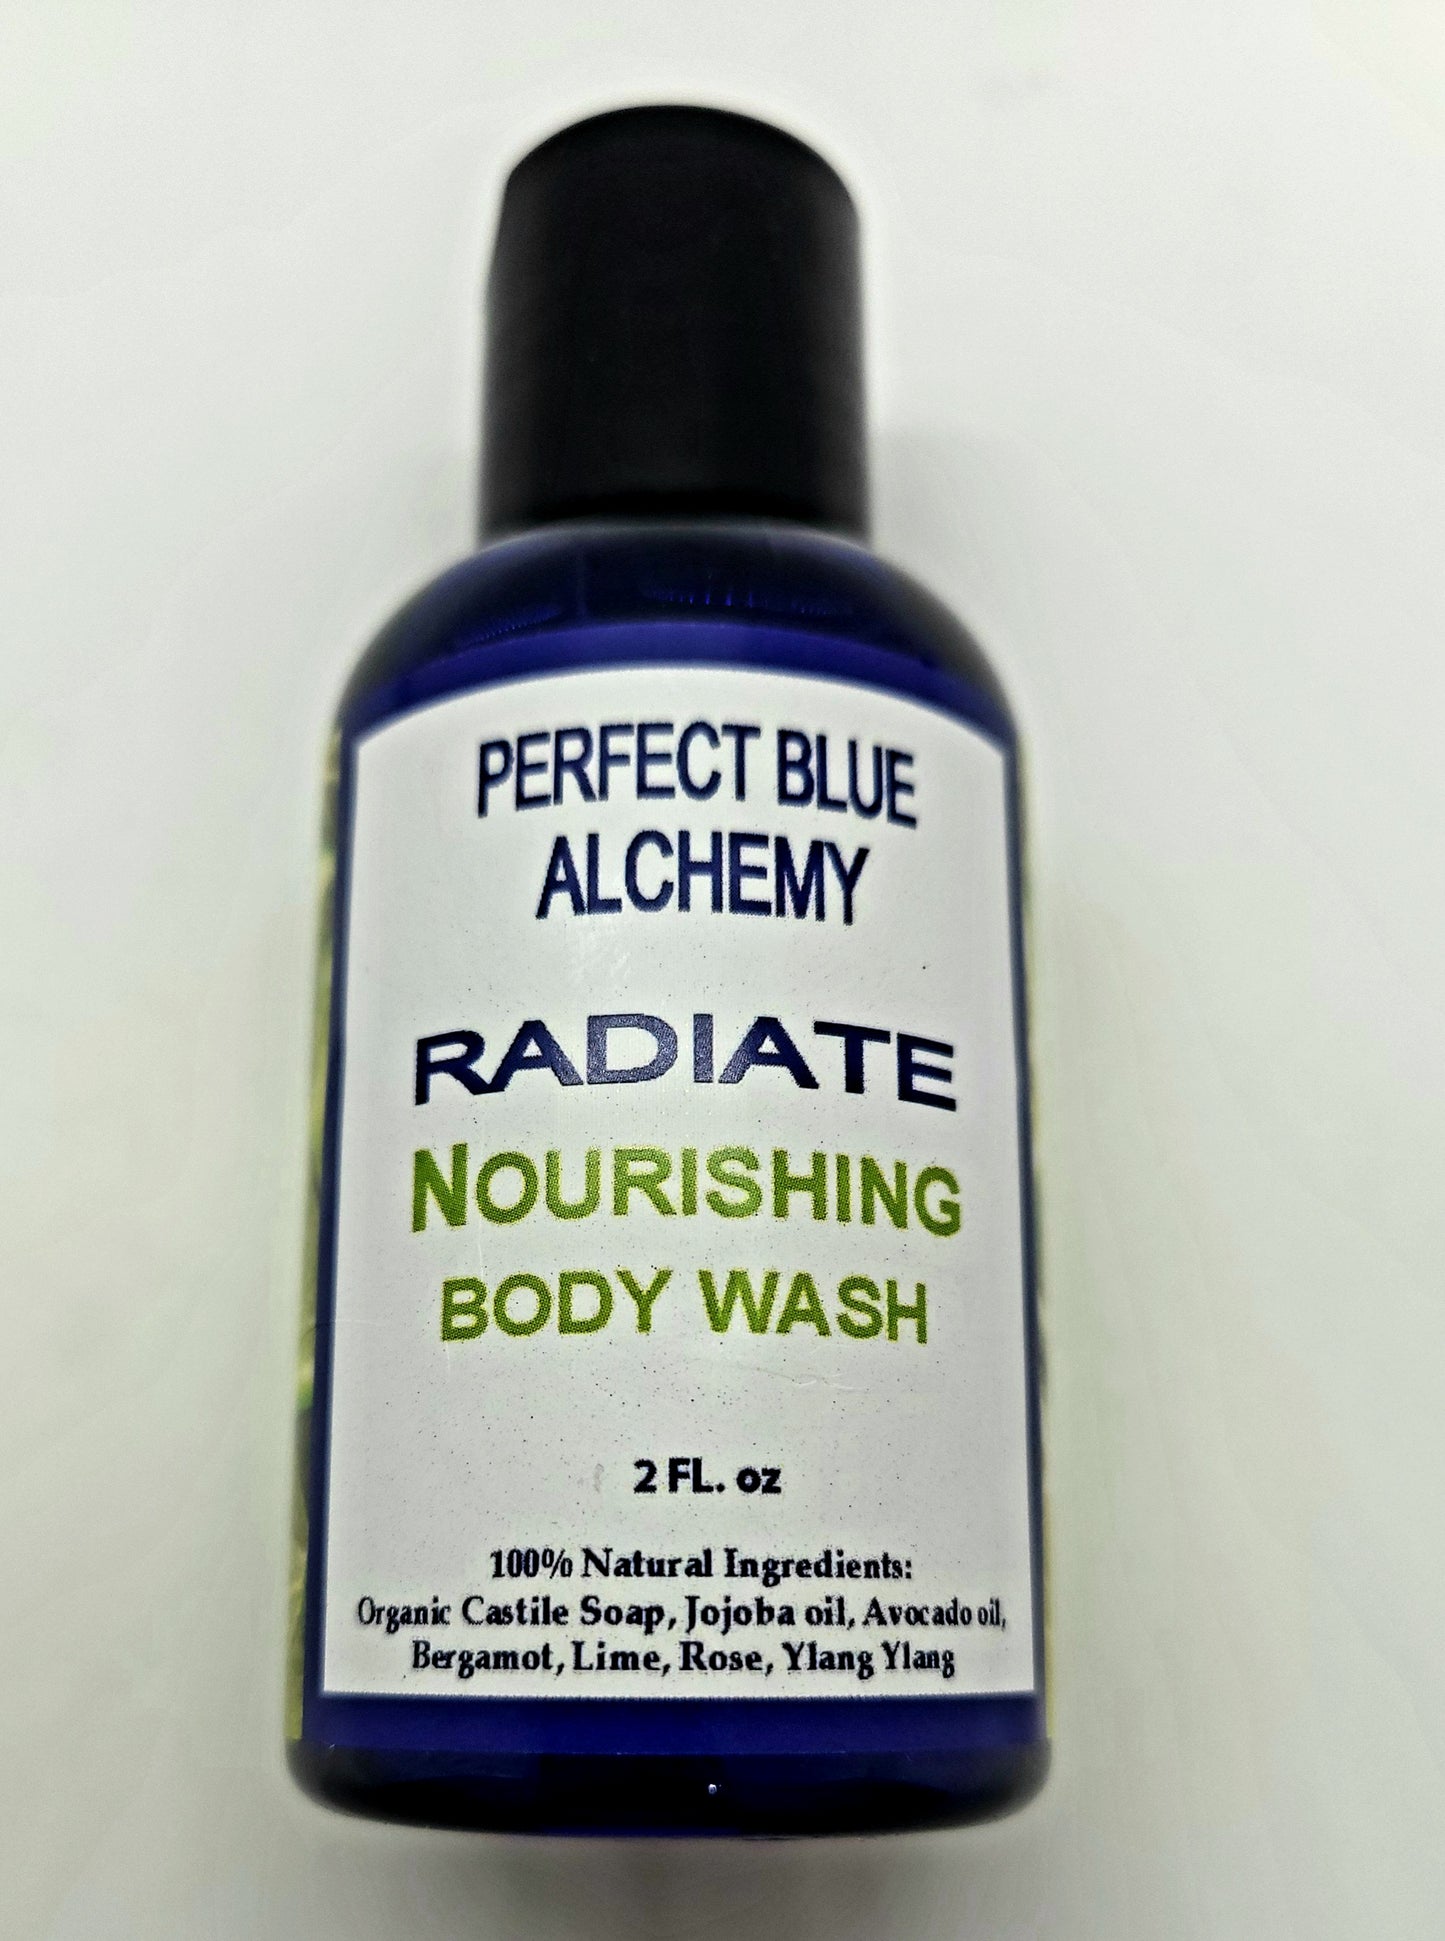 Radiate Nourishing Body Wash